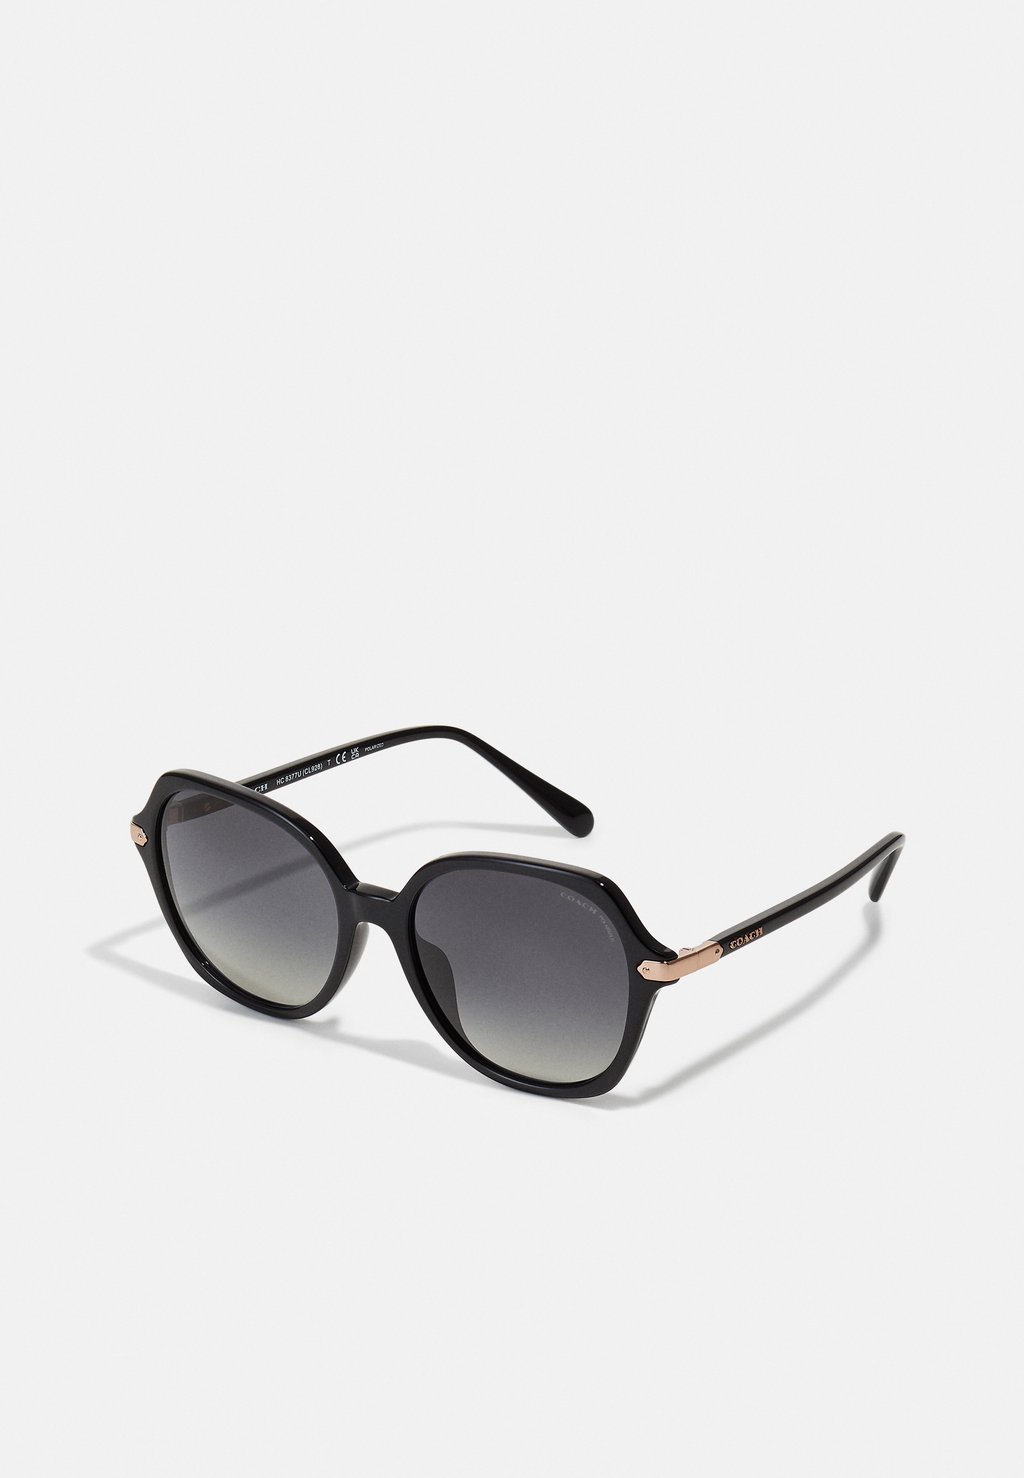 Солнцезащитные очки Coach, черные